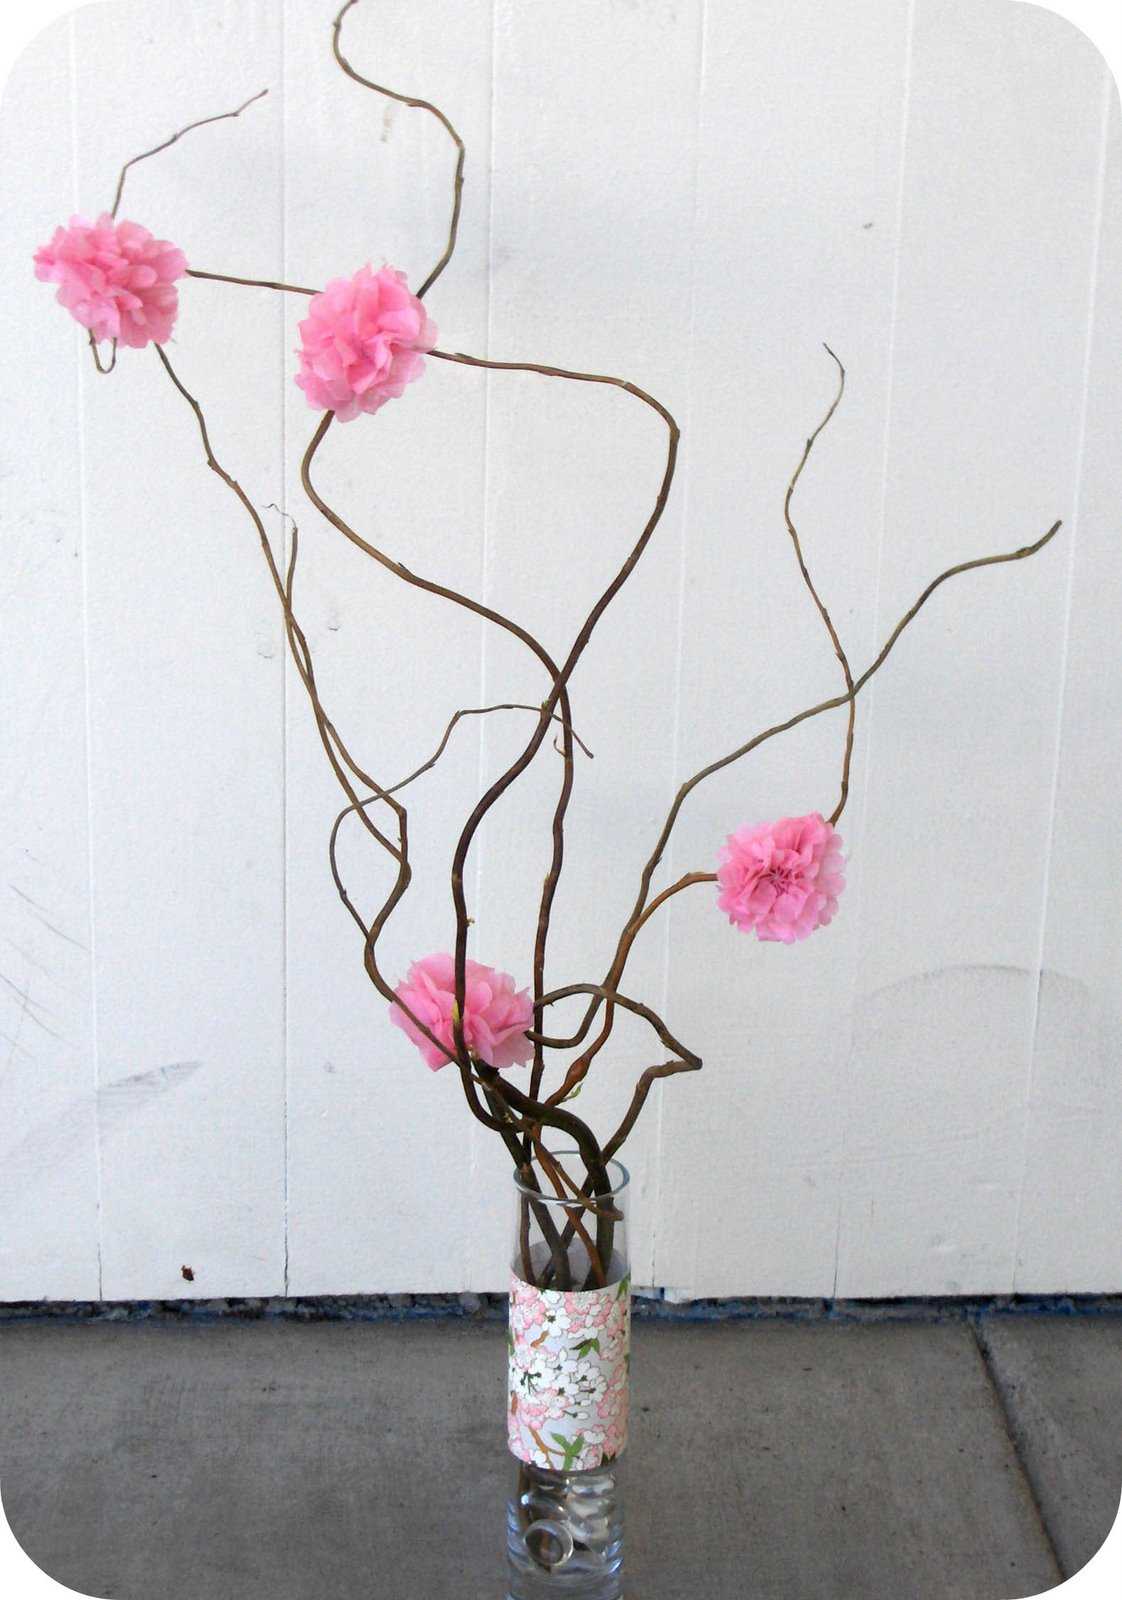 l'idée du design original d'un vase avec des branches décoratives